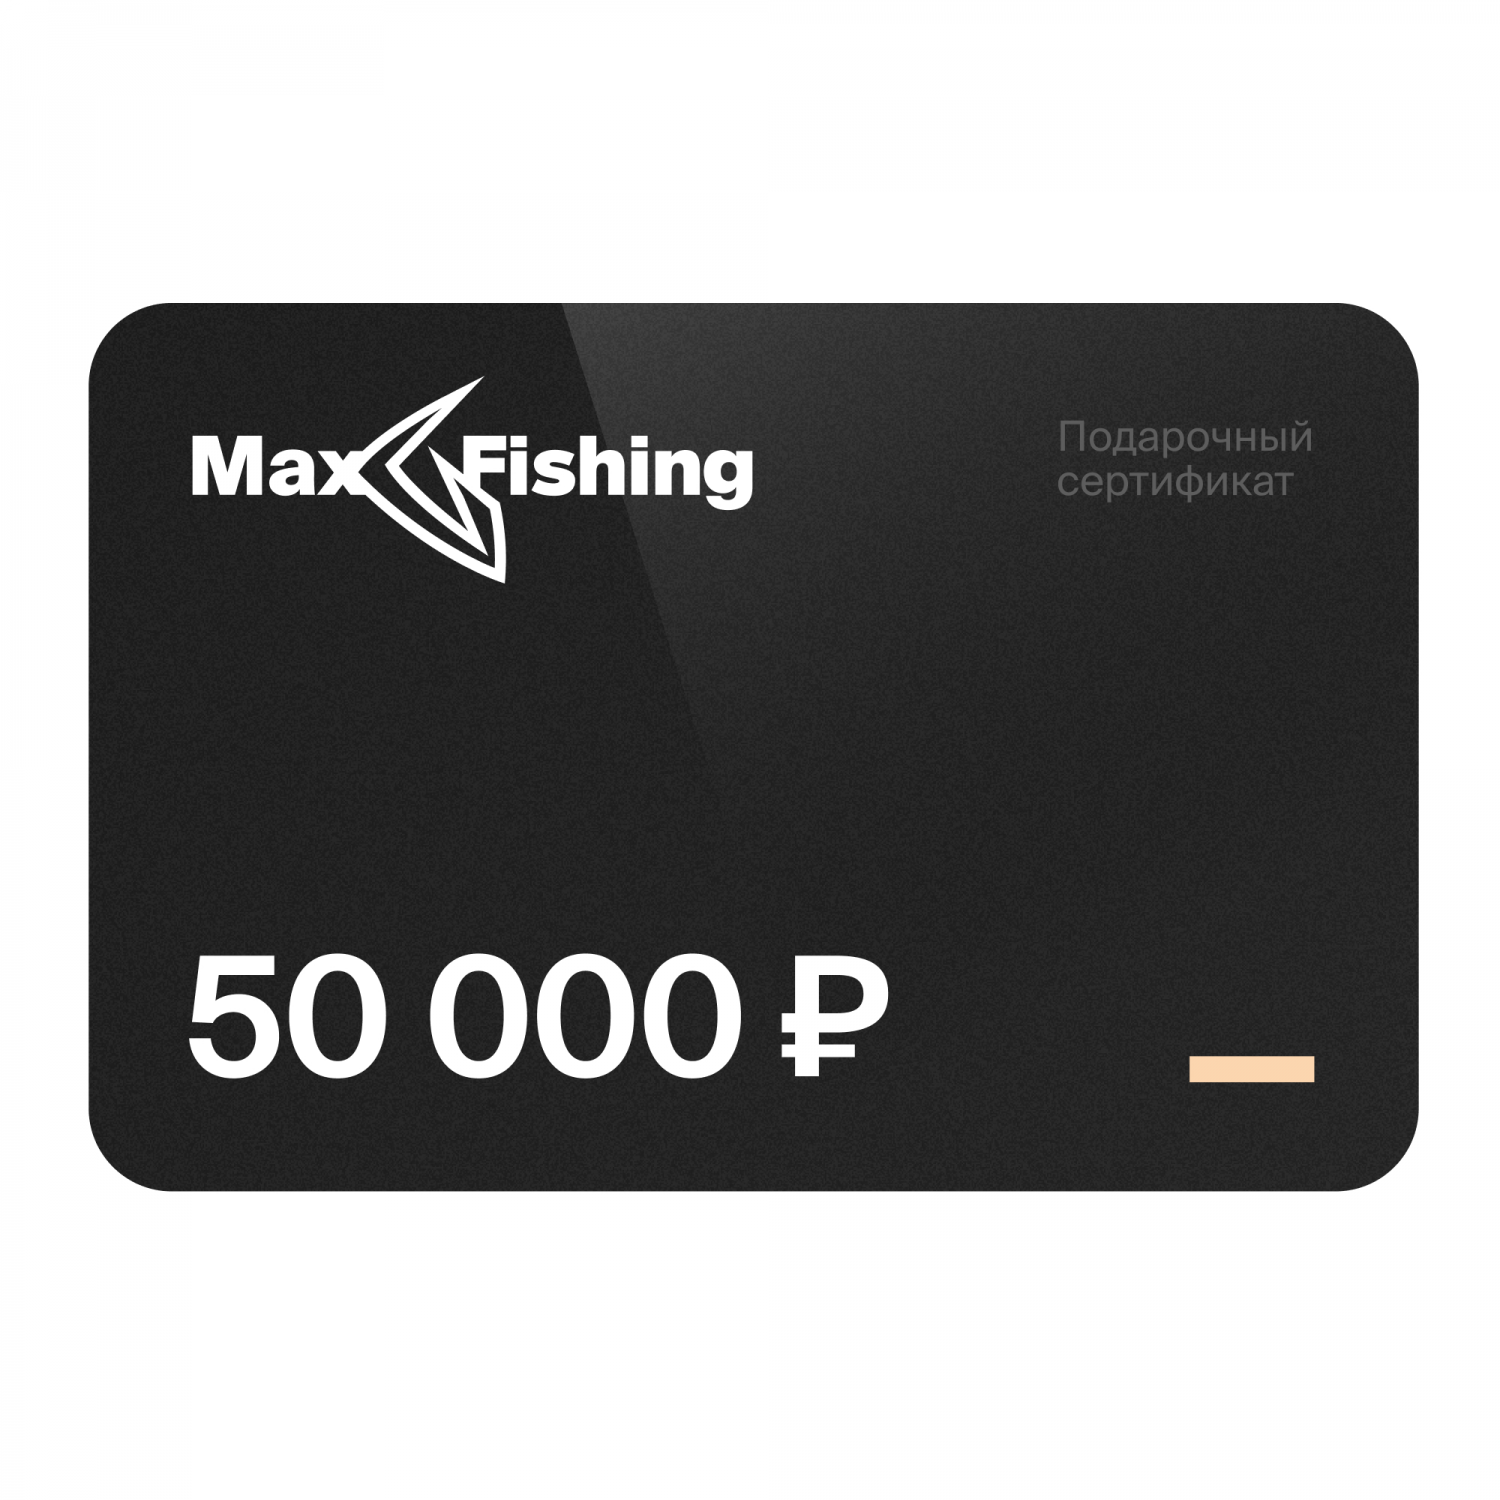 Подарочный сертификат MaxFishing 50 000 ₽ подарочный сертификат номиналом 10000 рублей